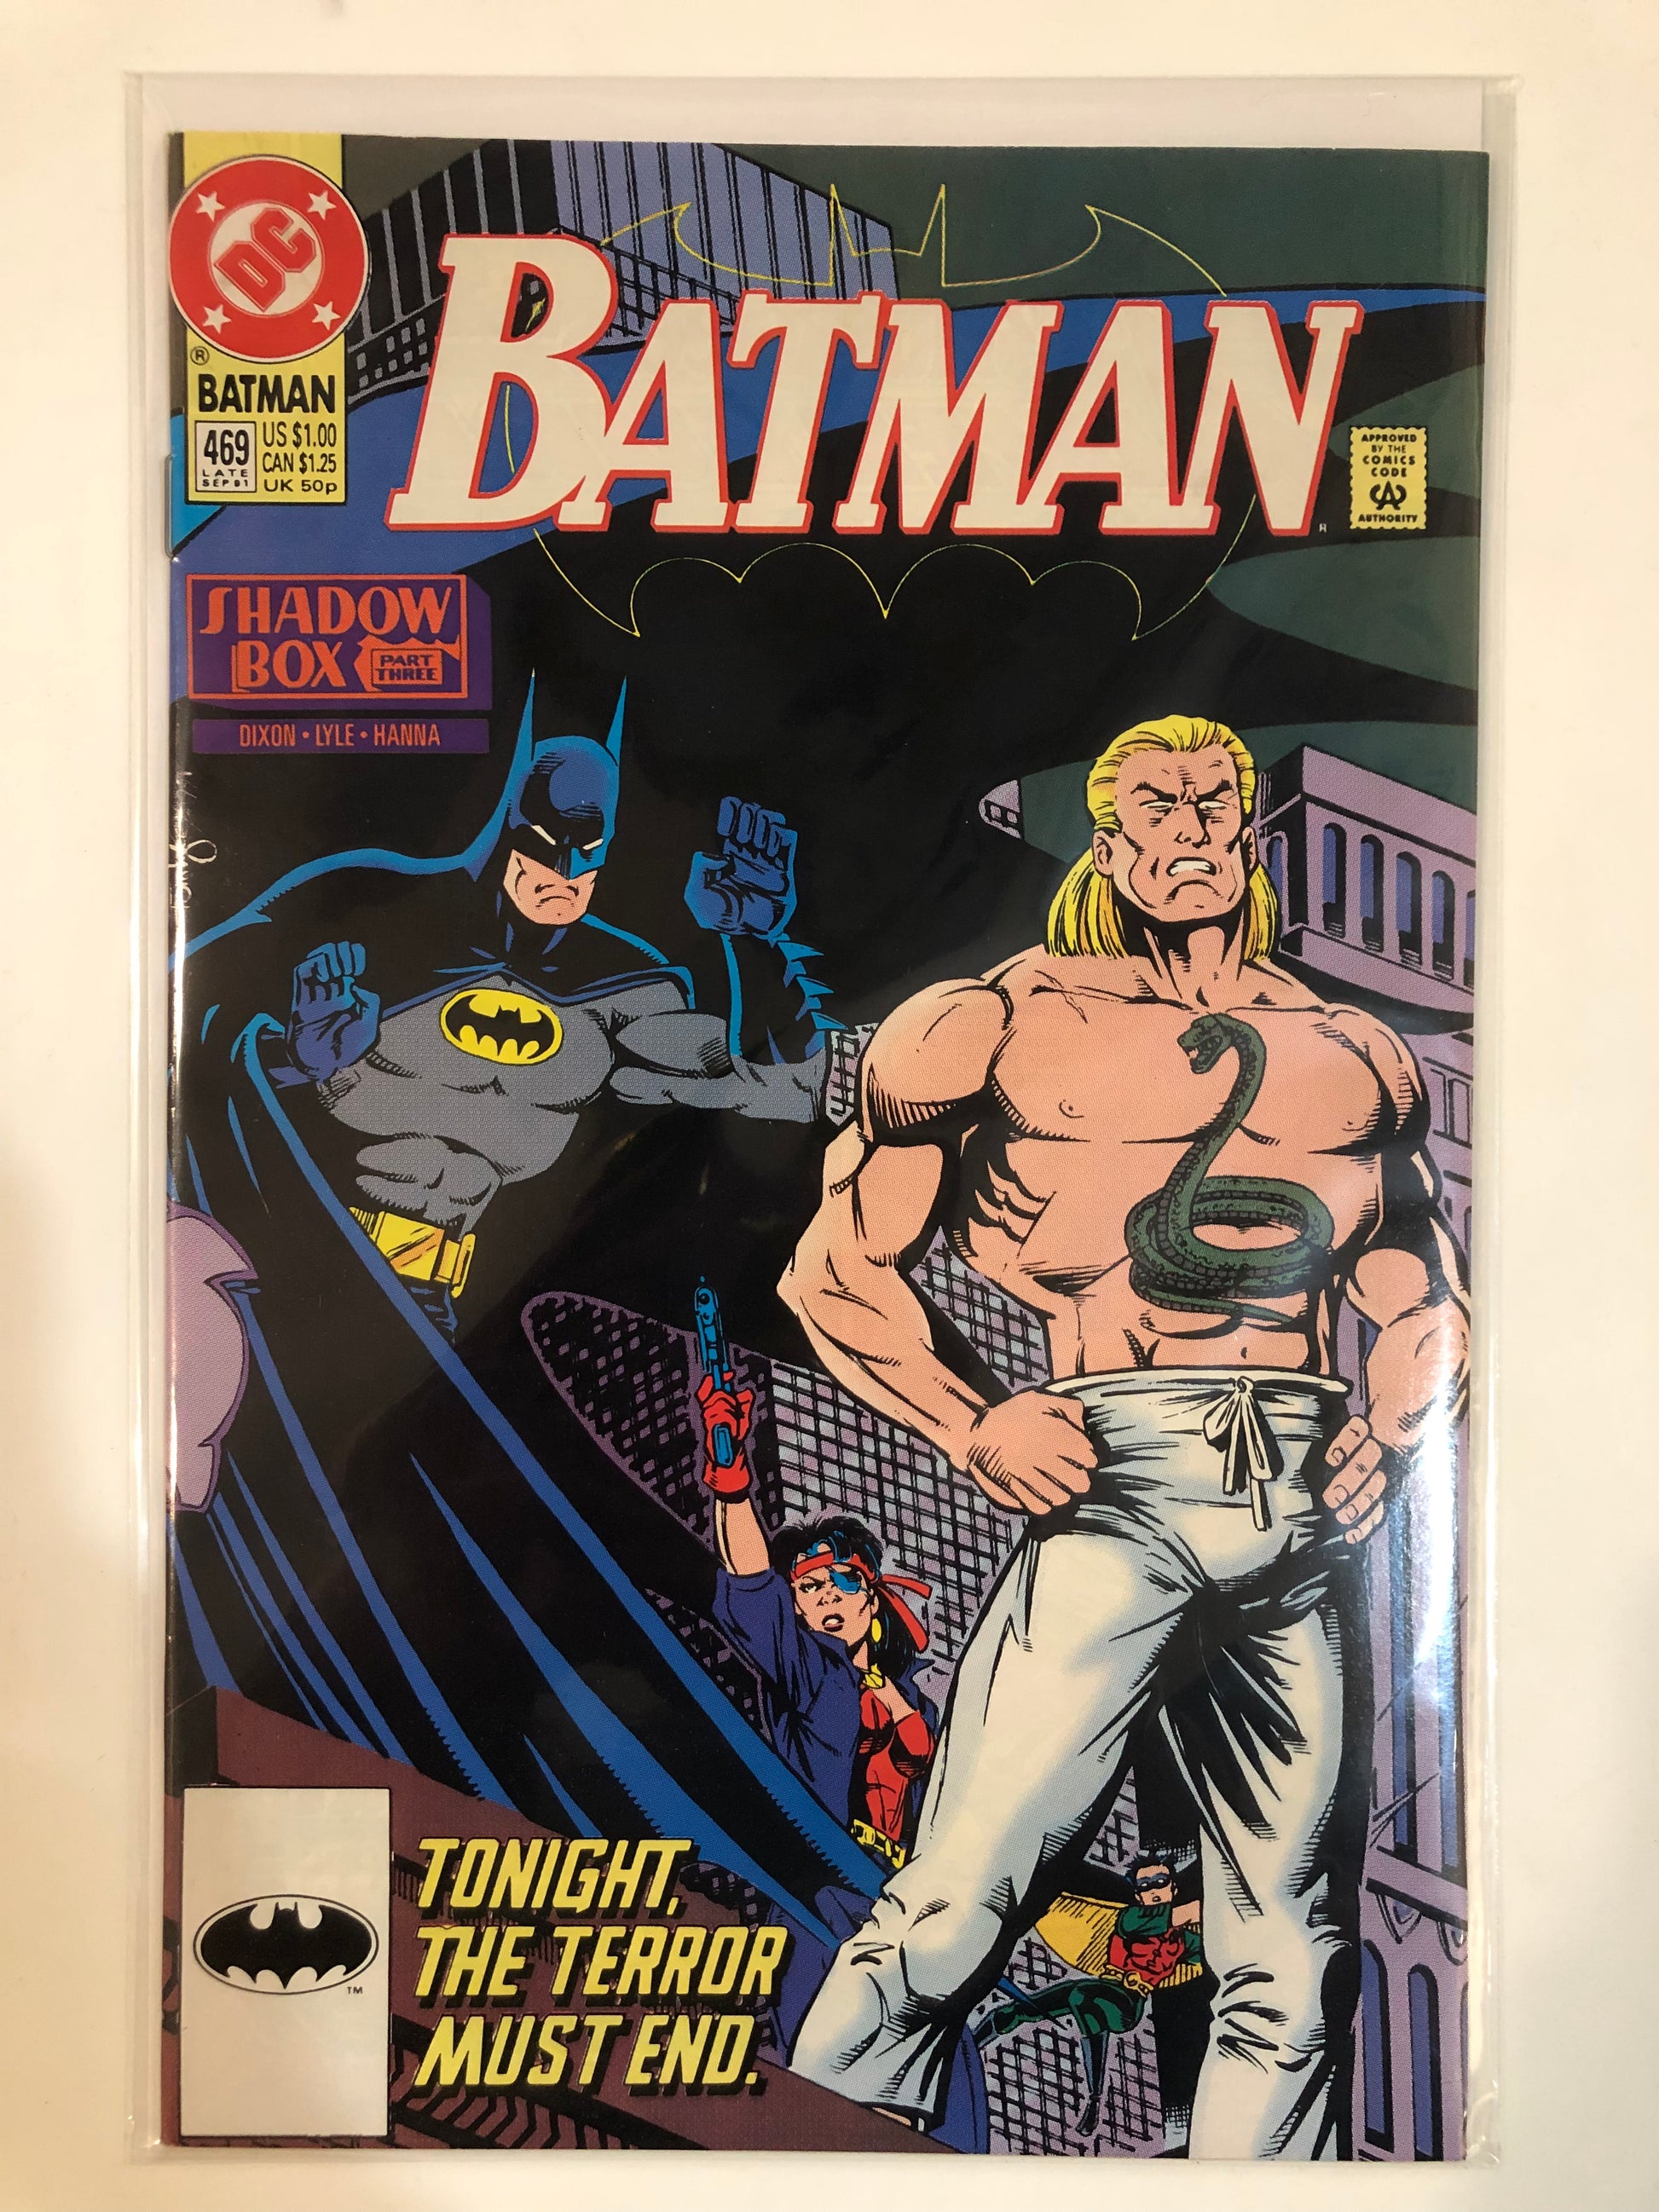 Batman #469 – Neighborhood Comics